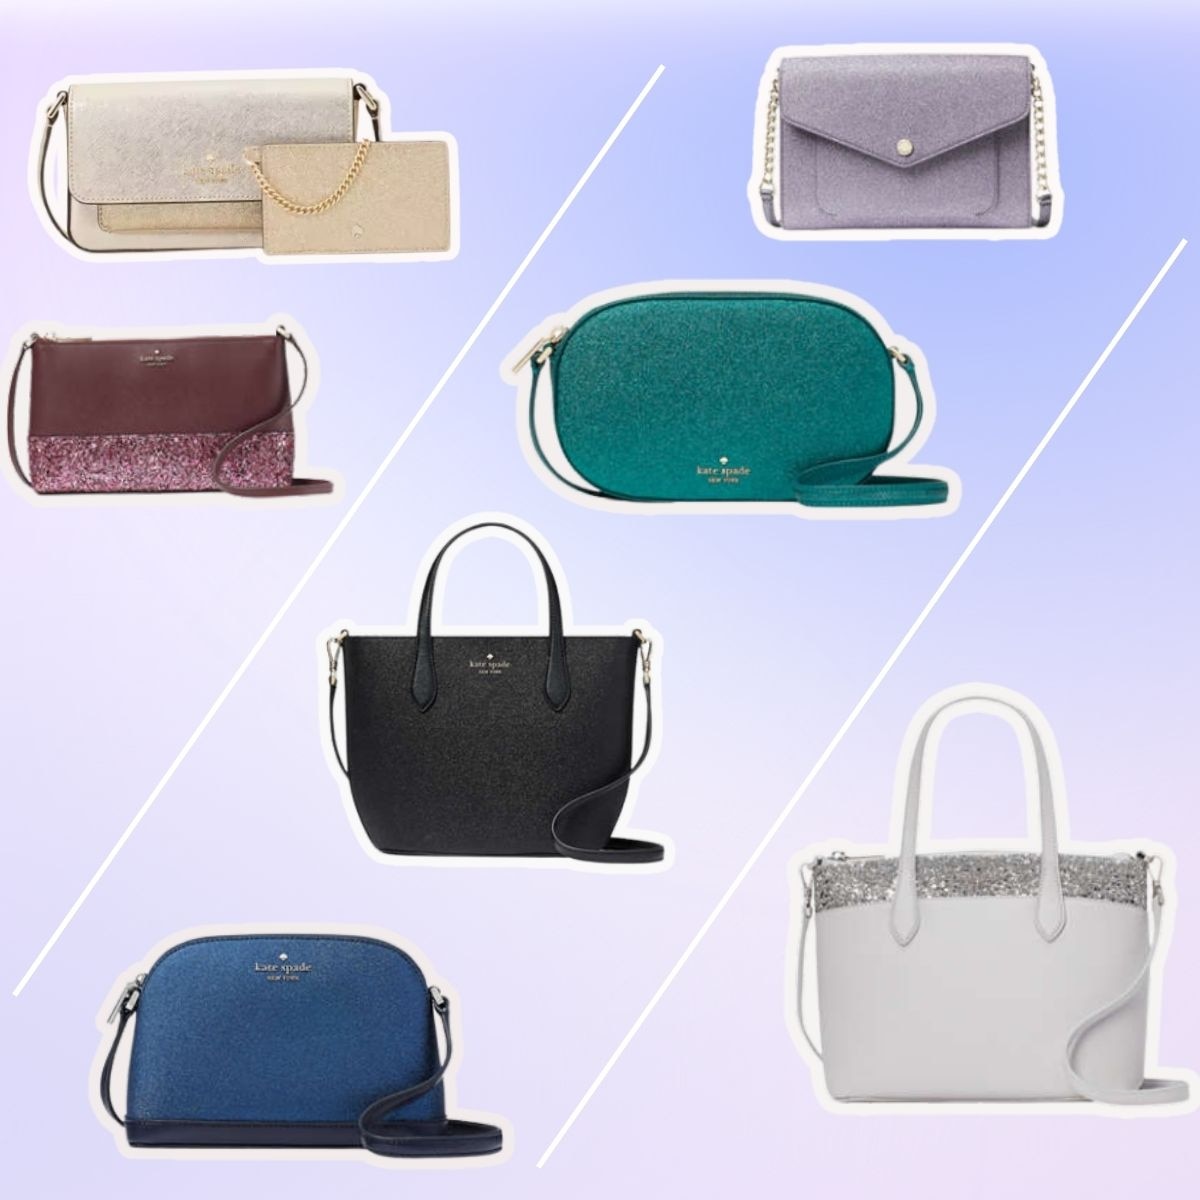 Fake Kate Spade | How to Spot a Fake Handbag -- Budget Fashionista